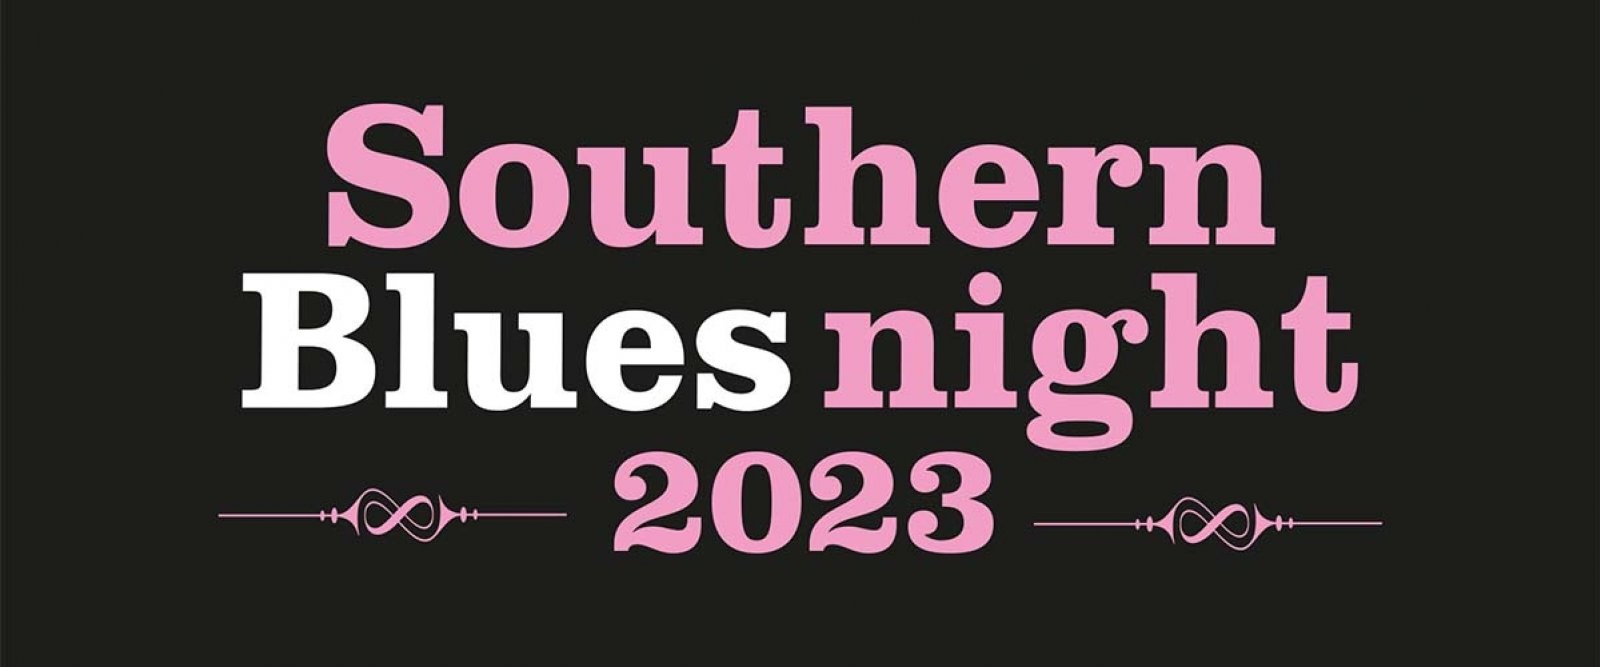 25 years Southern Bluesnight